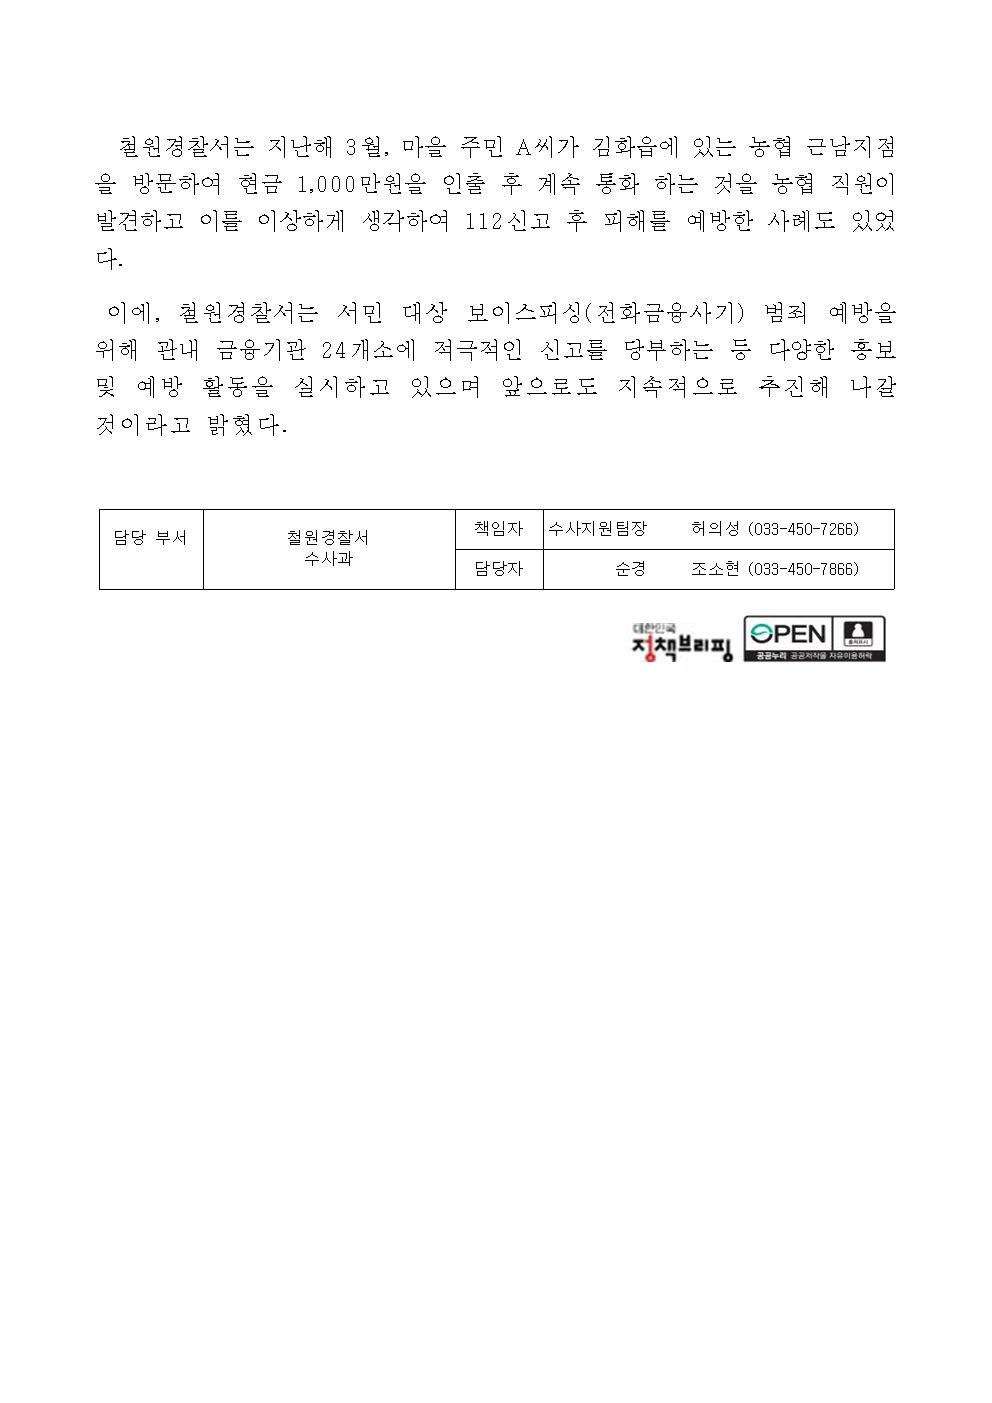 전화금융사기피해 예방 홍보-23.3.30보이스피싱 보도자료 표준양식2